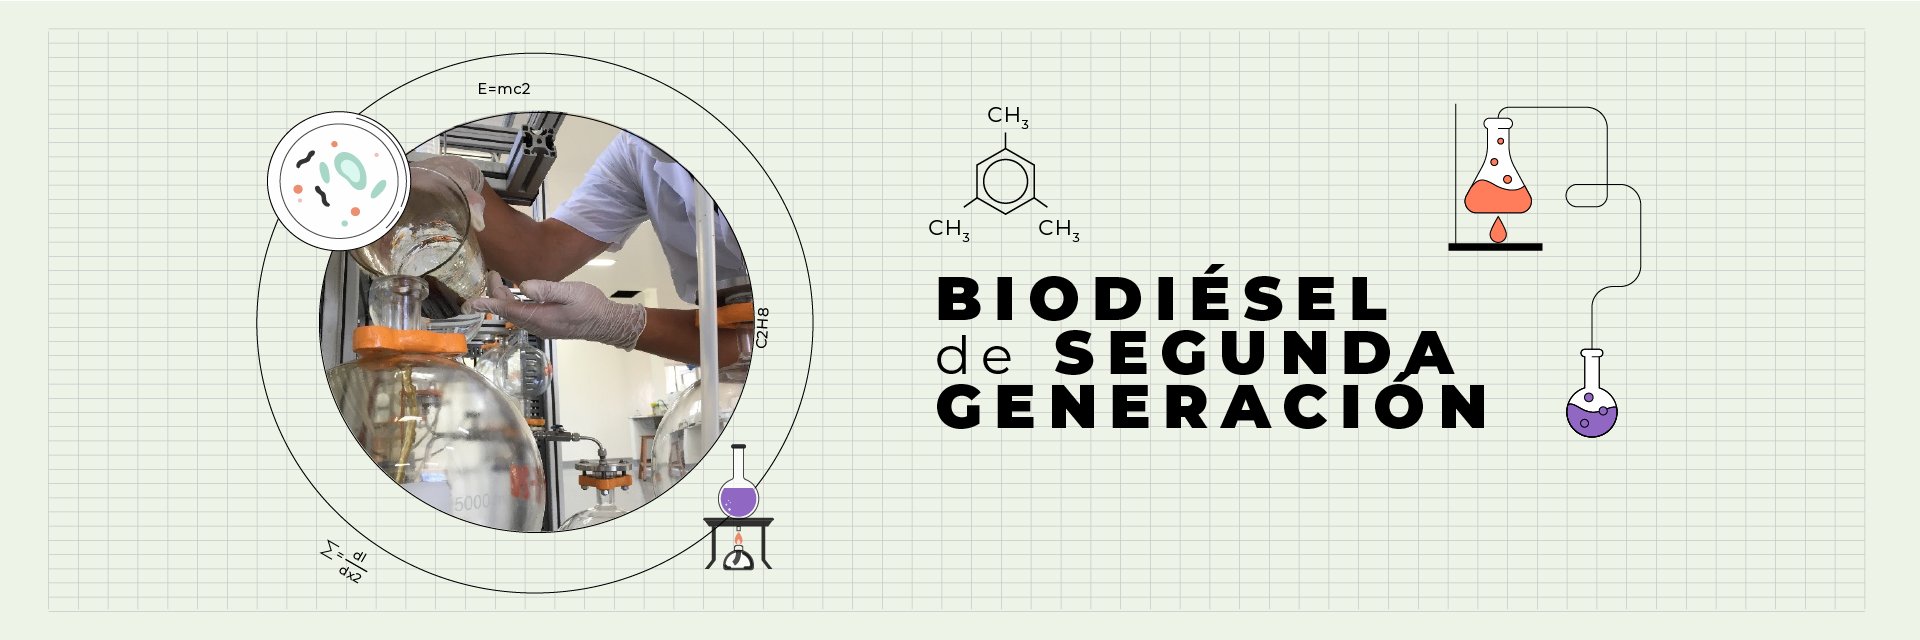 Biodiésel de segunda generación: Una apuesta de la UDES